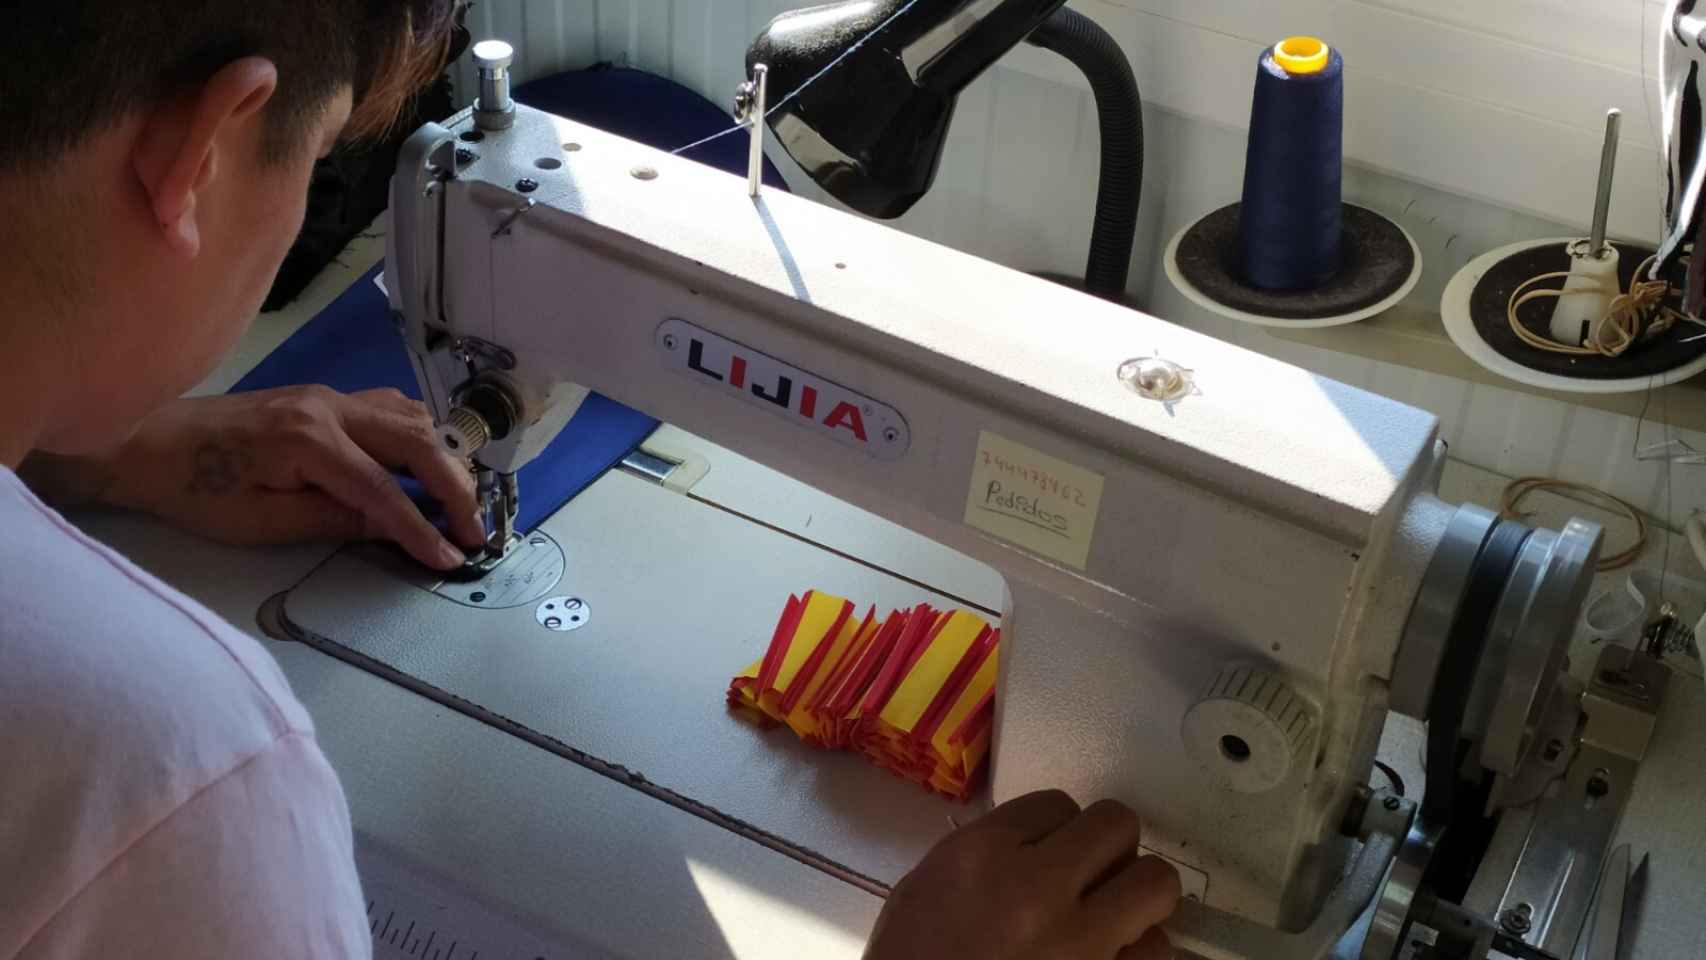 Un empleado confeccionando las banderas españolas en la mascarilla.